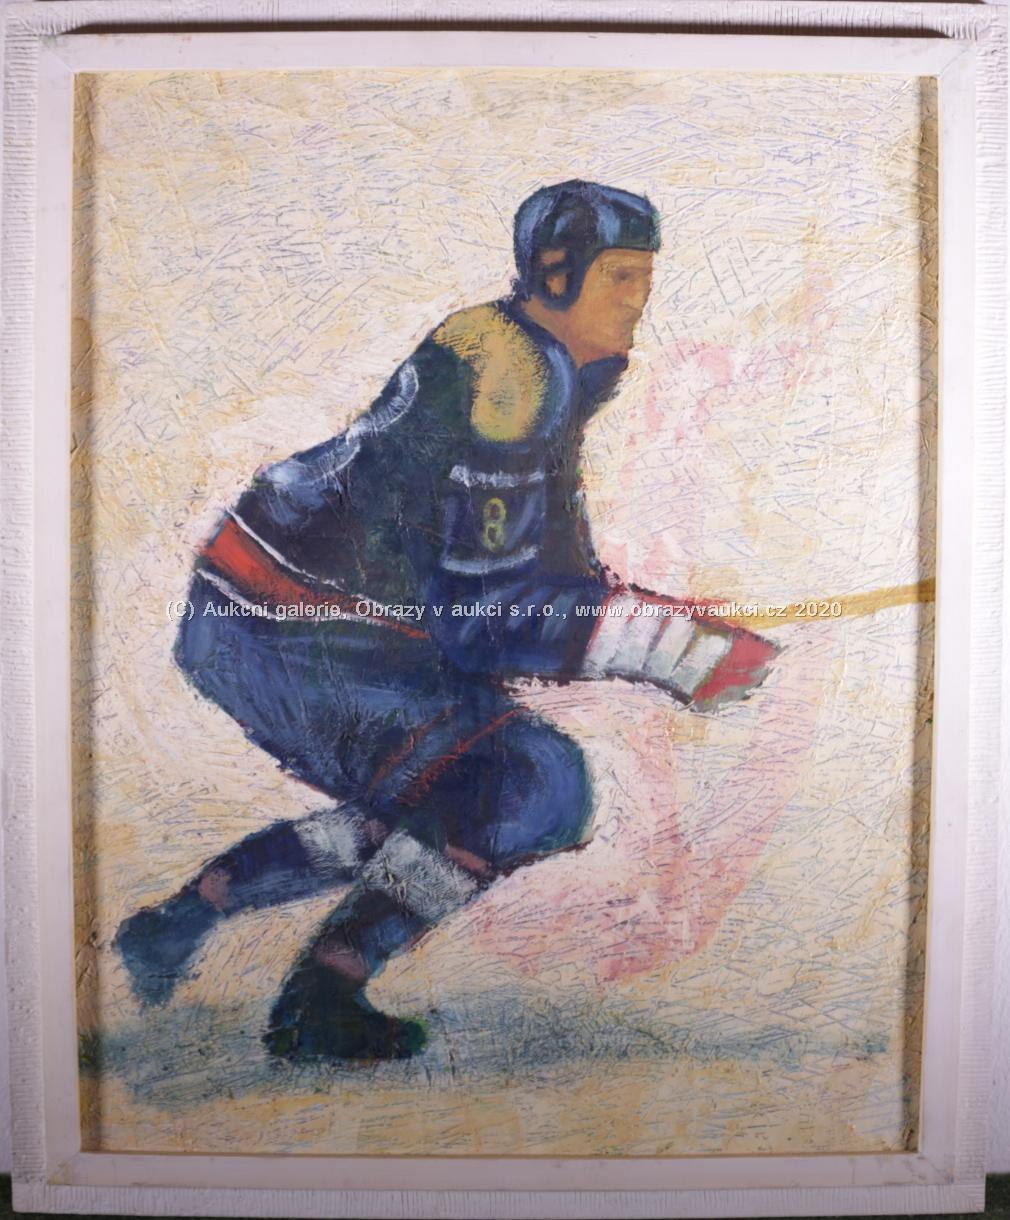 Jiří Salajka - Hokejista s číslem 8